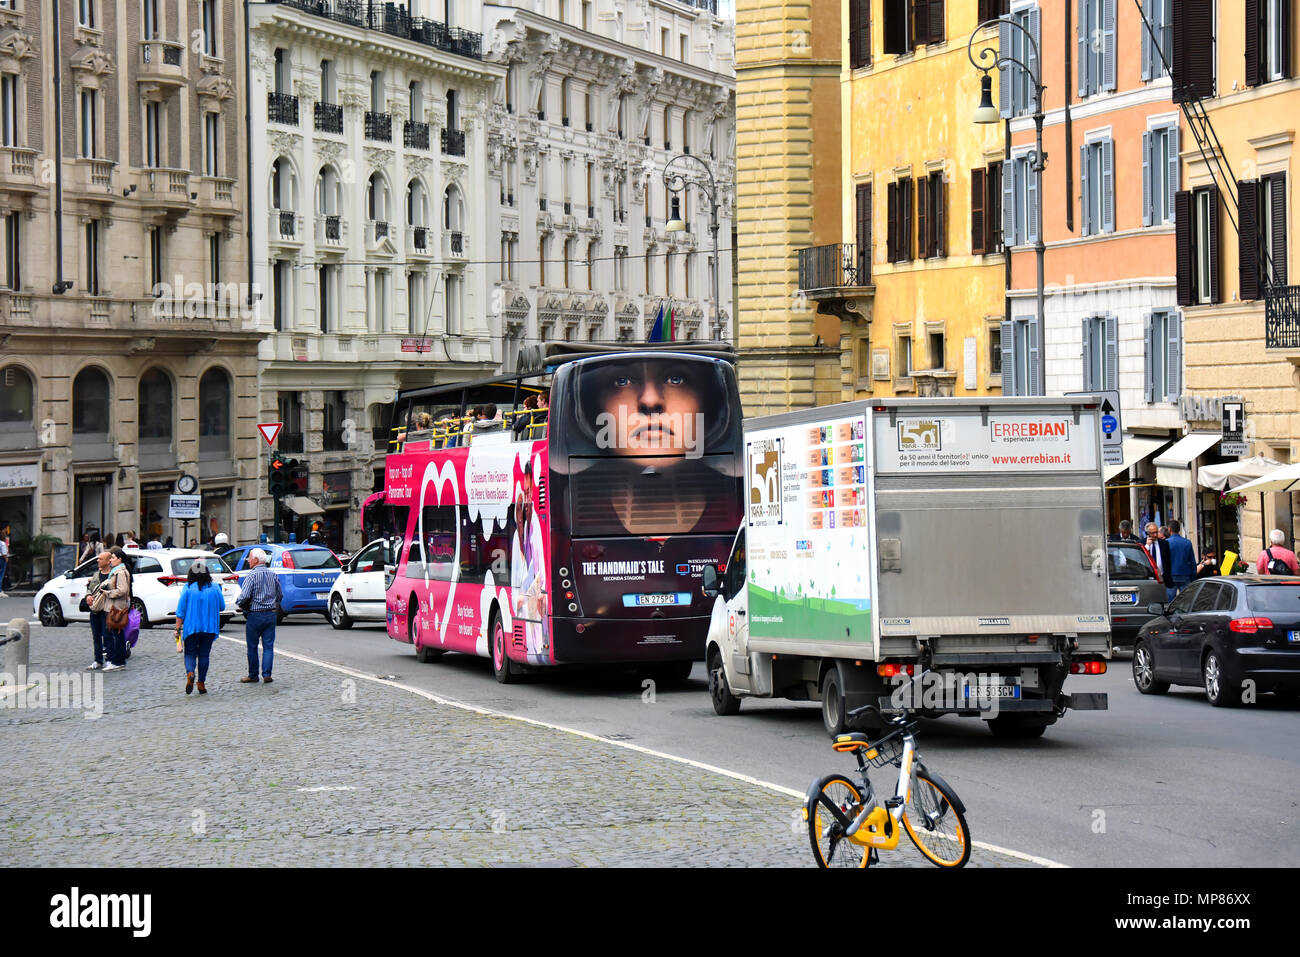 Roma, Italia - 9 Maggio 2018: un autobus turistico con un annuncio pubblicitario per la Serva del racconto Aziona turisti attraverso le strade della città eterna. Foto Stock